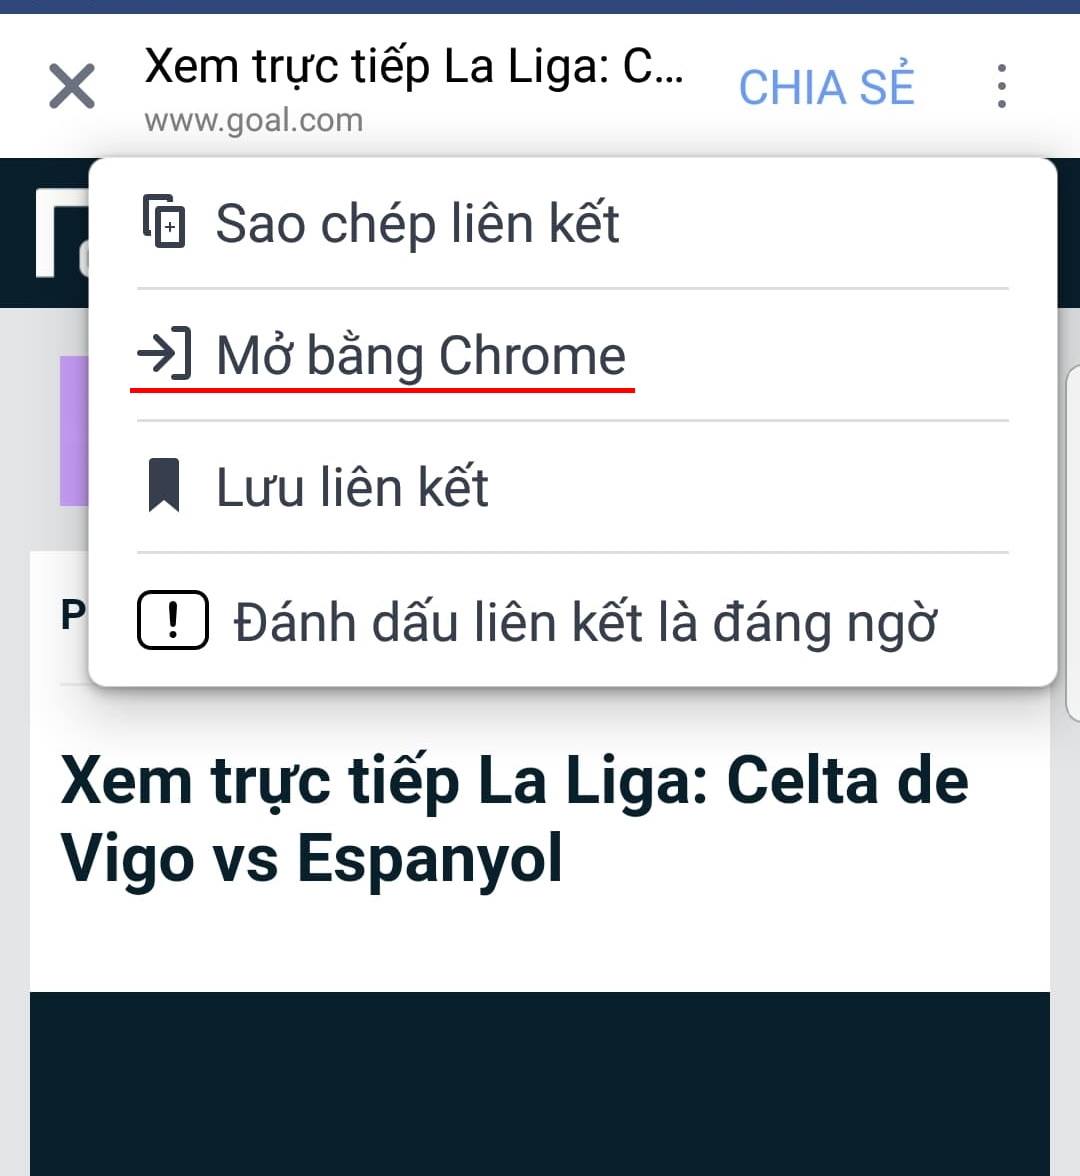 Cách xem trực tiếp Barca và Real Madrid trên trang Goal Việt Nam